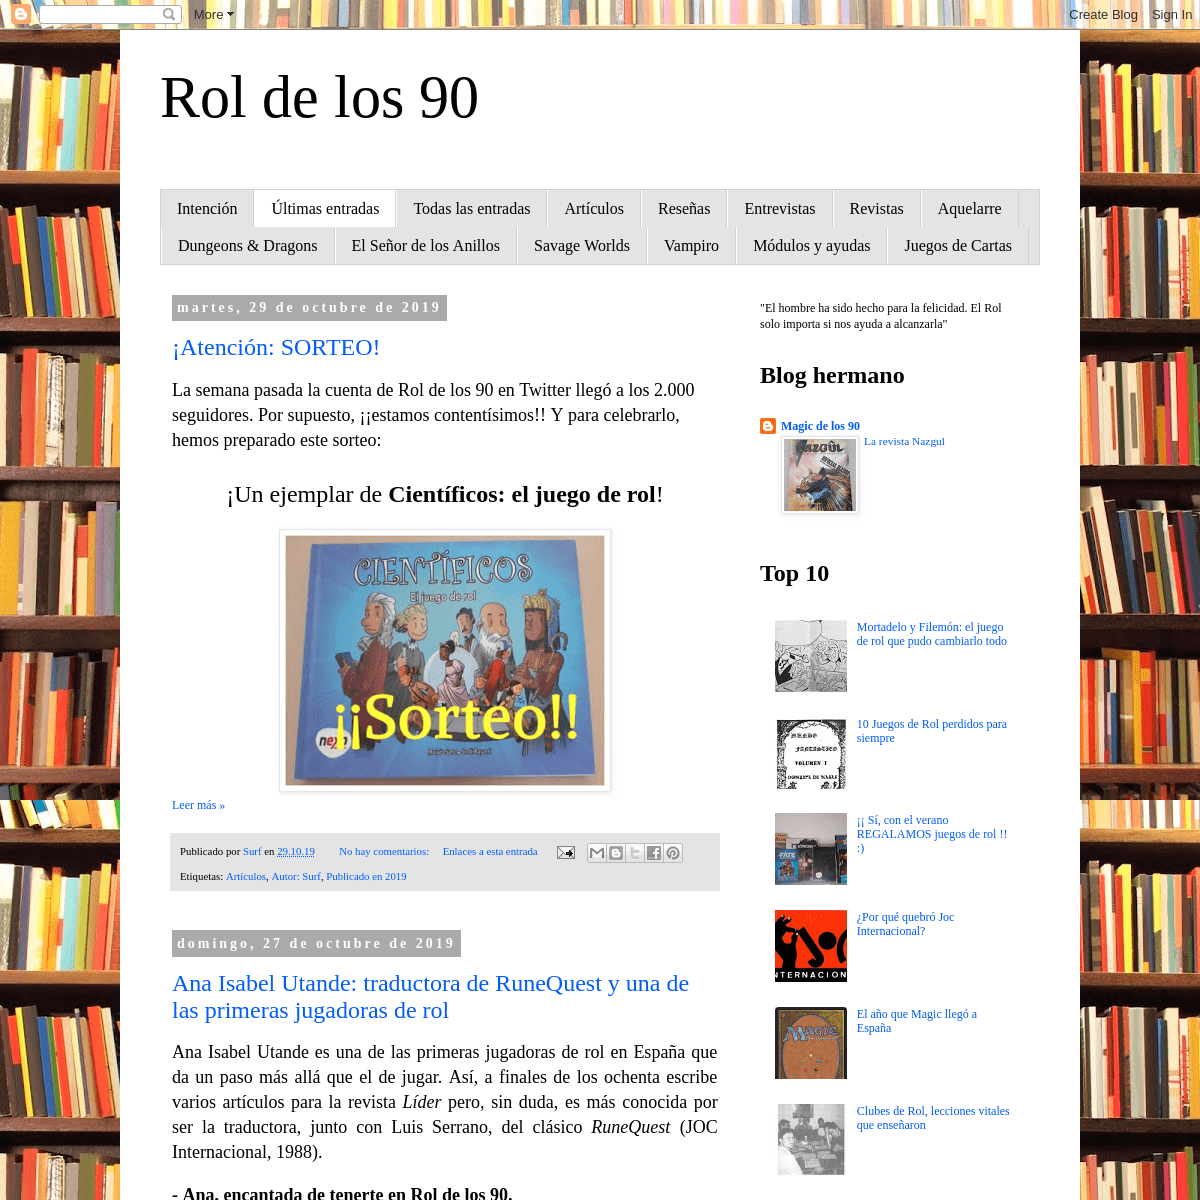 A complete backup of roldelos90.blogspot.com